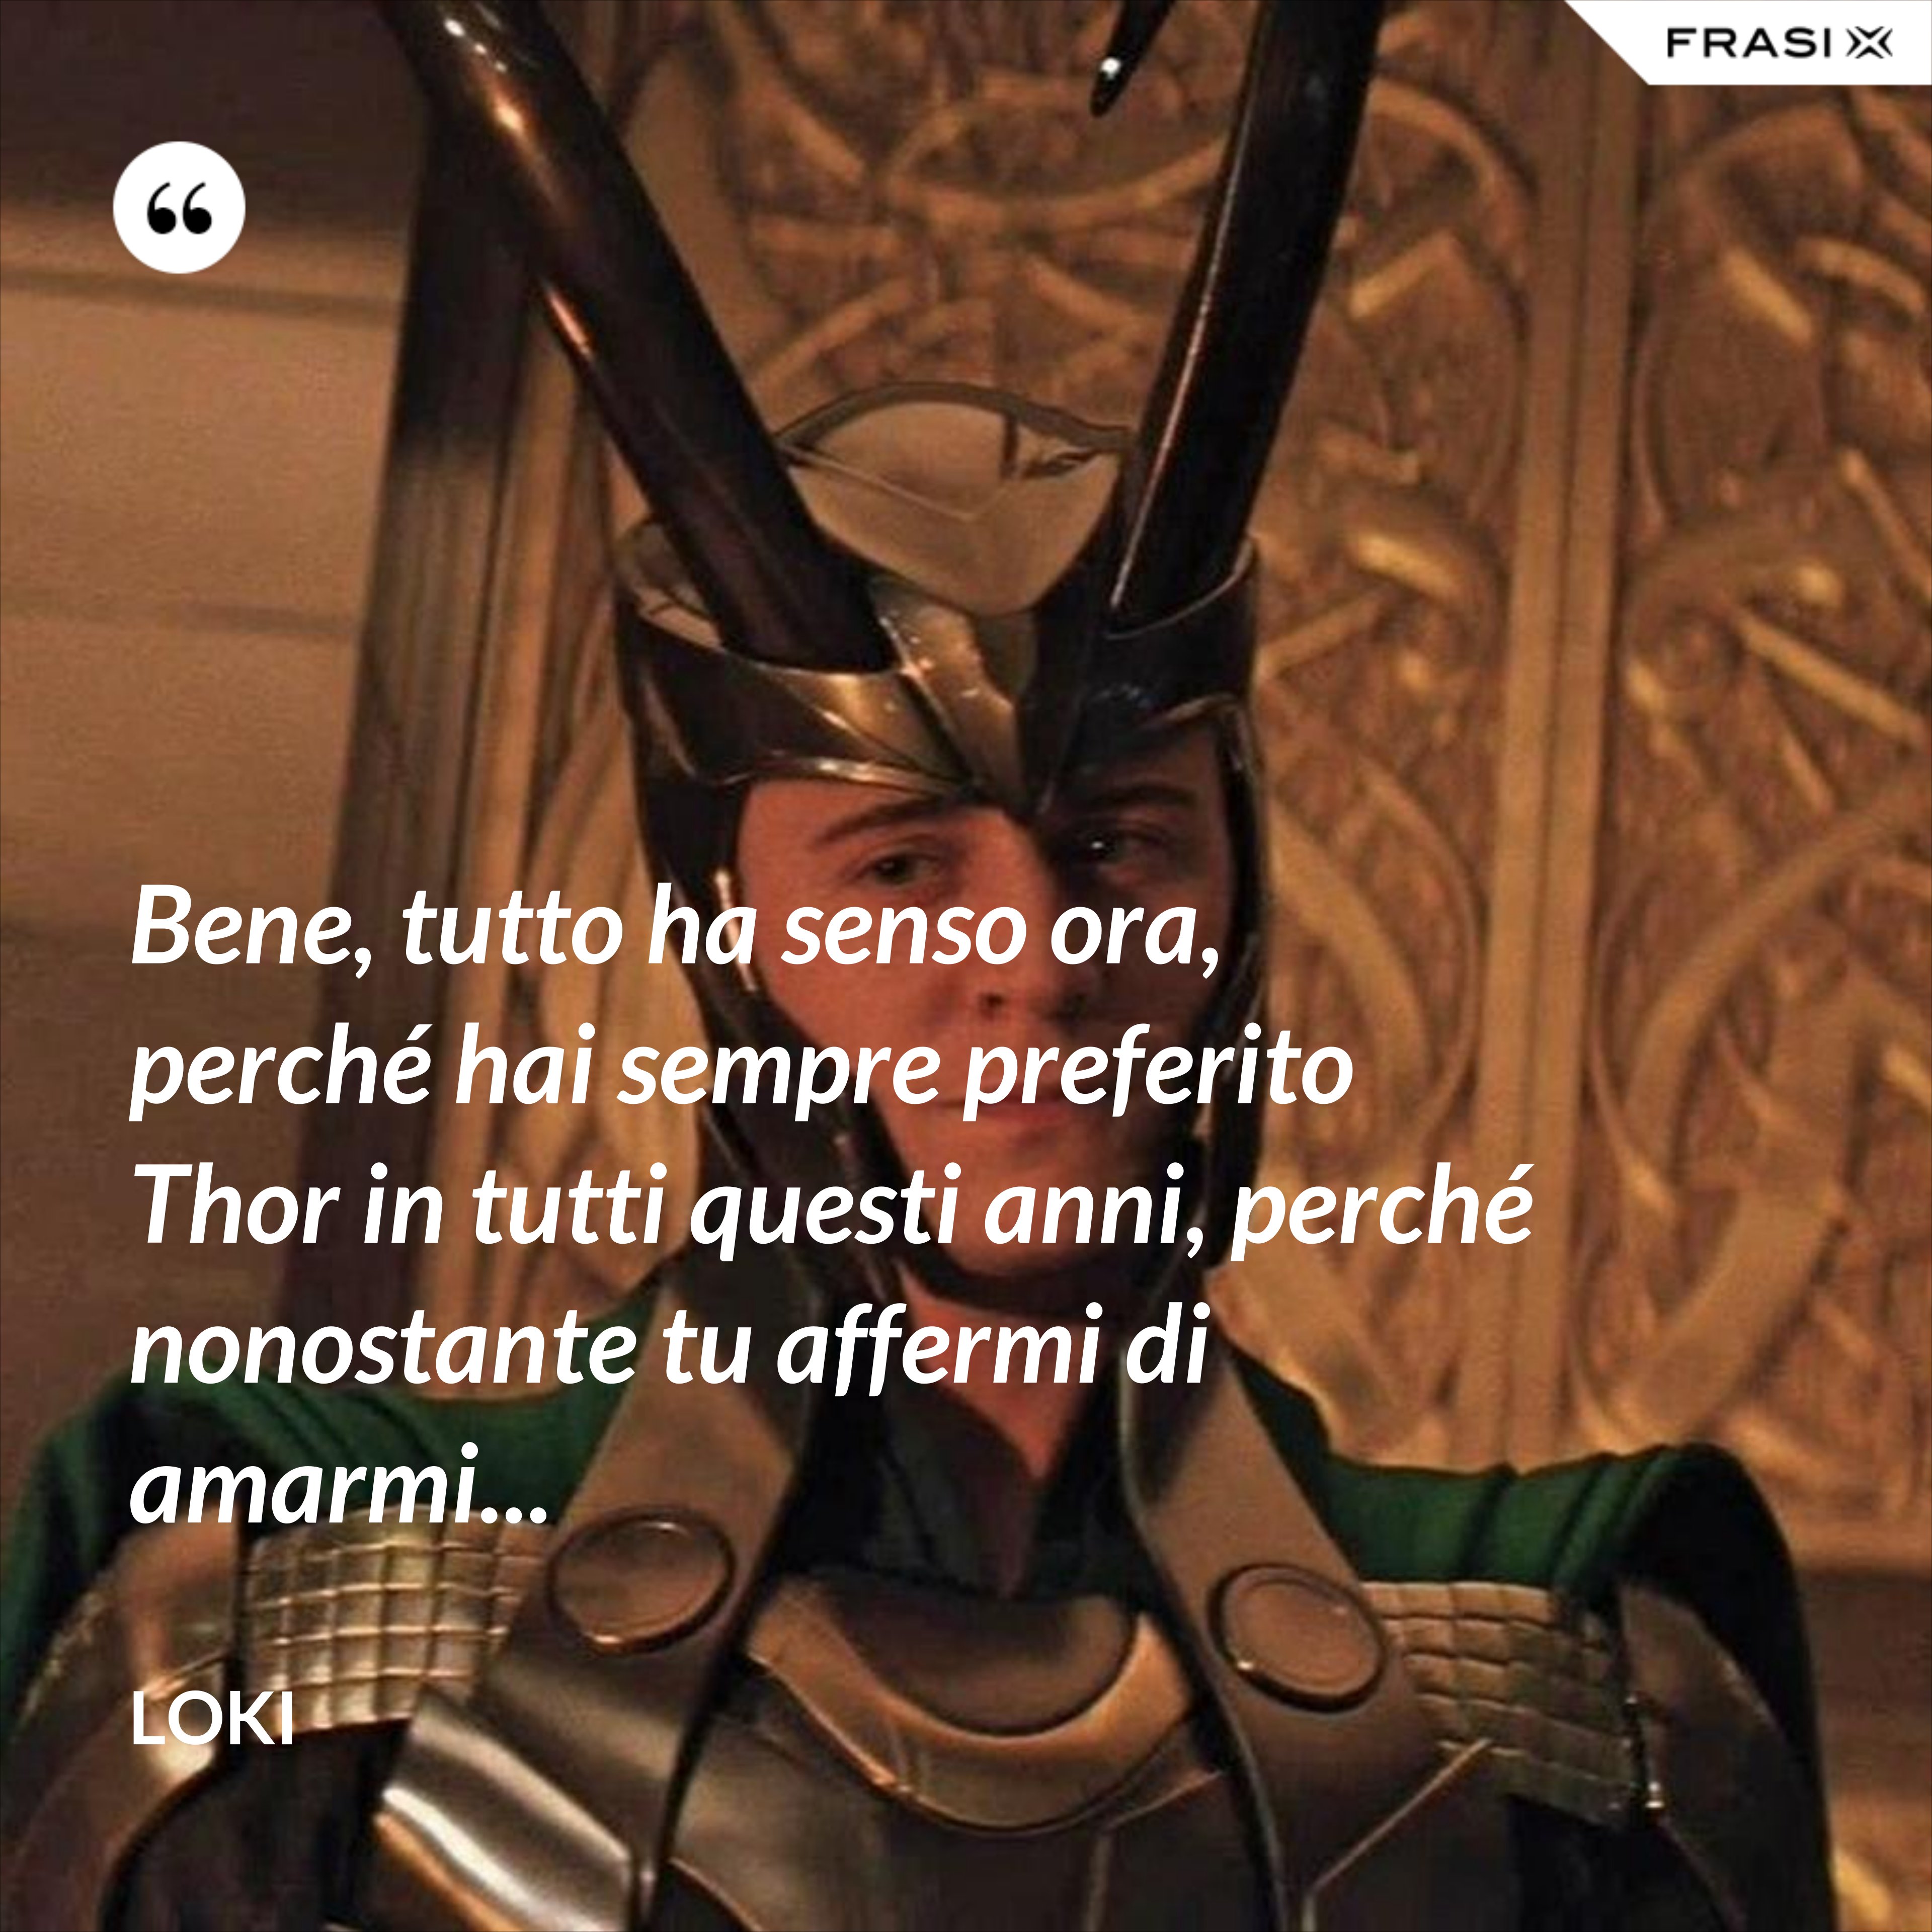 Bene, tutto ha senso ora, perché hai sempre preferito Thor in tutti questi anni, perché nonostante tu affermi di amarmi... - Loki